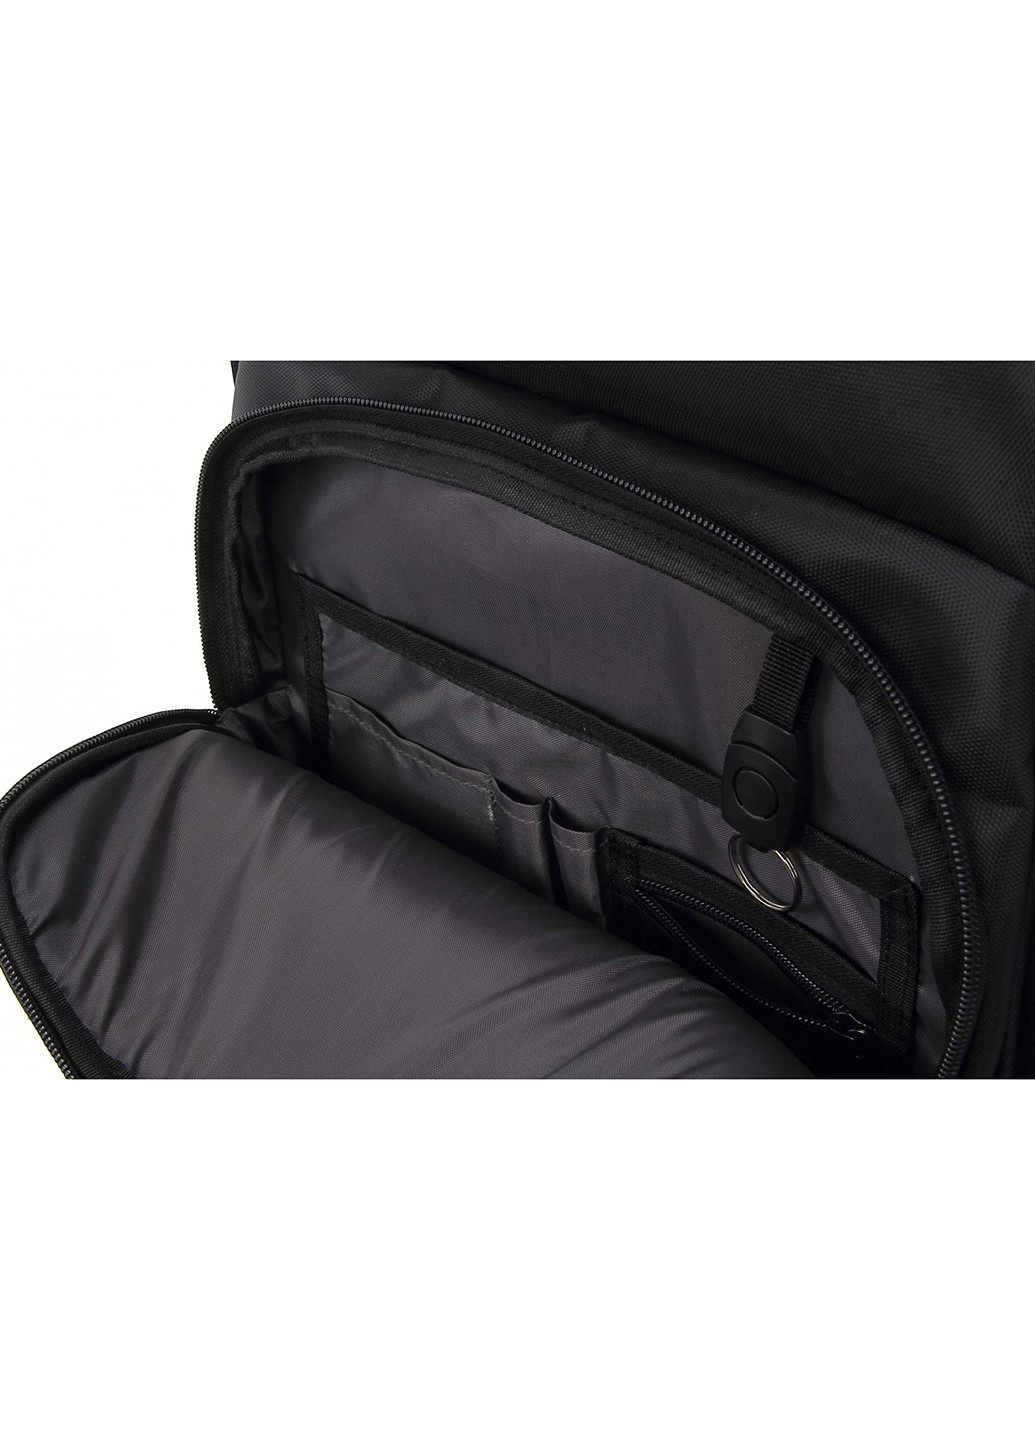 Рюкзак для ноутбука 15.6 DW-02 anti-theft black (378538) DEF для ноутбука def 15.6" dw-02 anti-theft black (138727468)